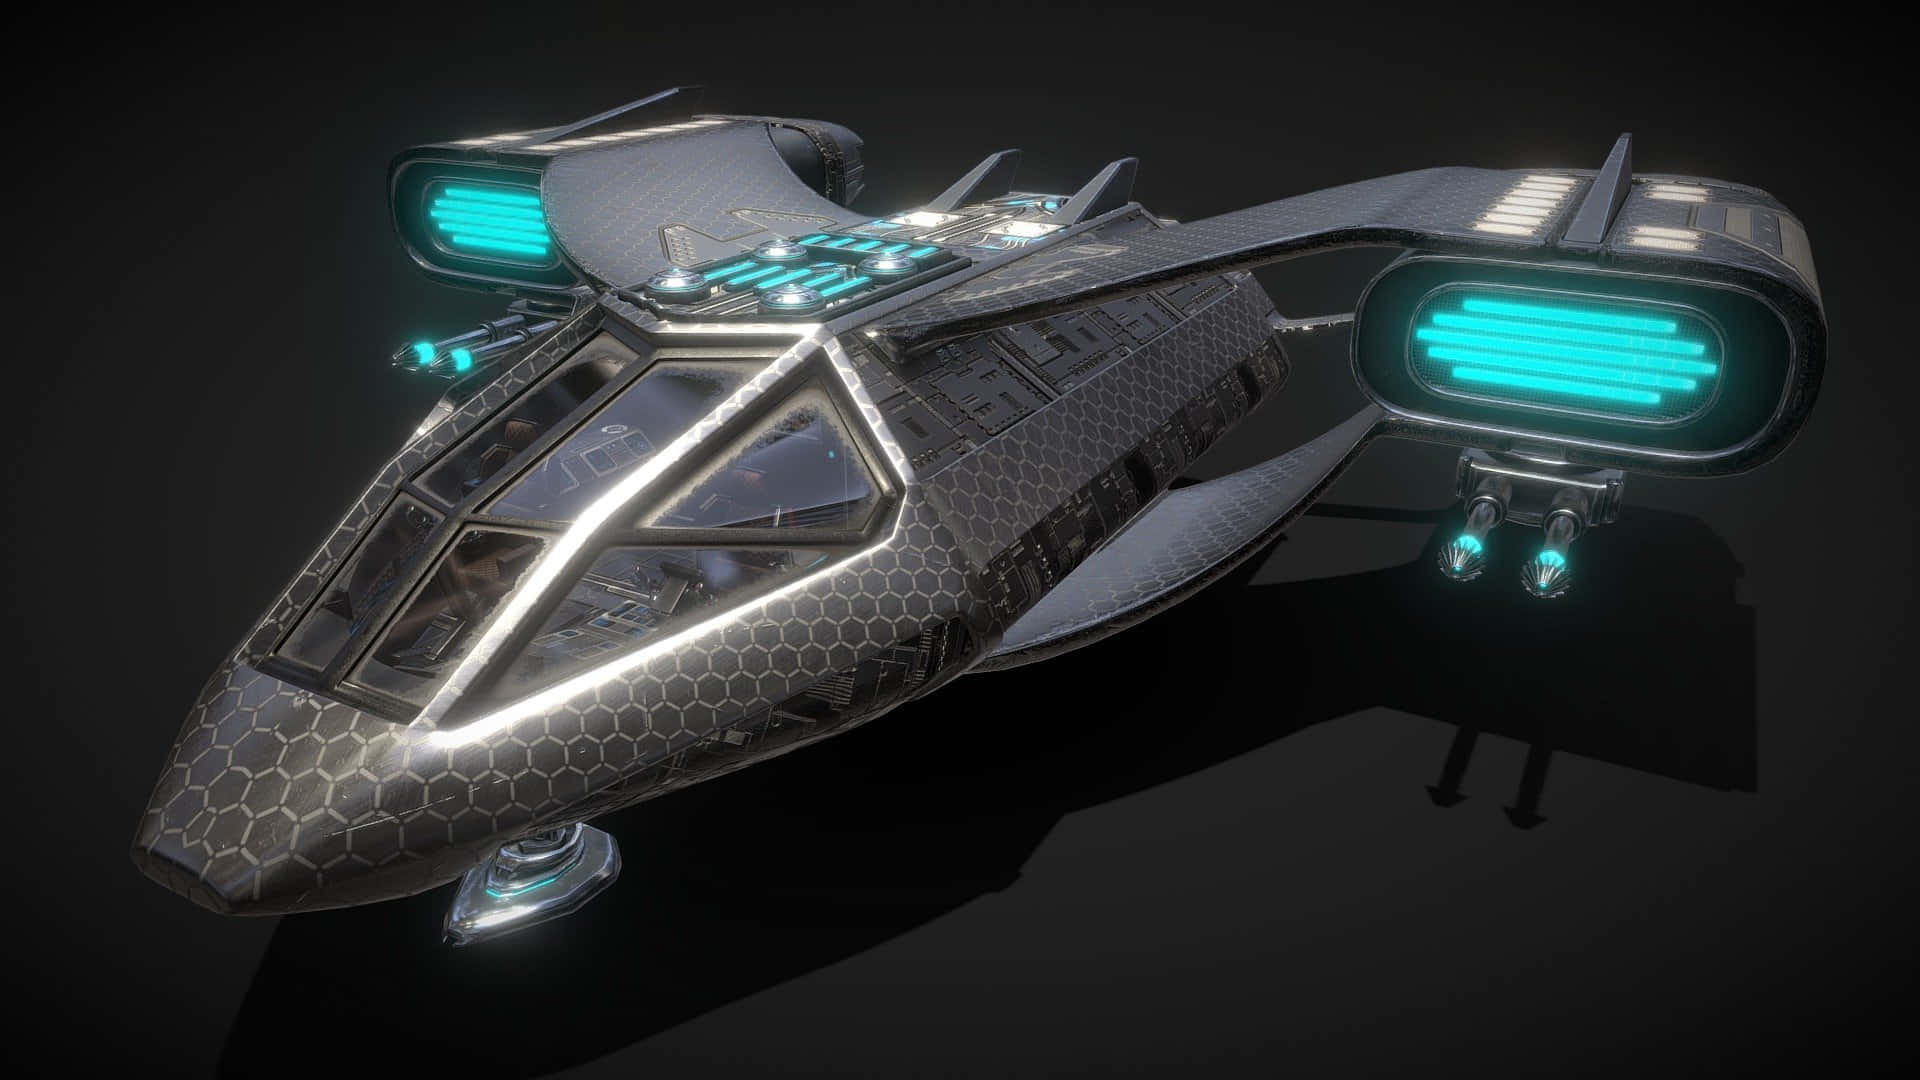 Futuristic private spaceship in deep space